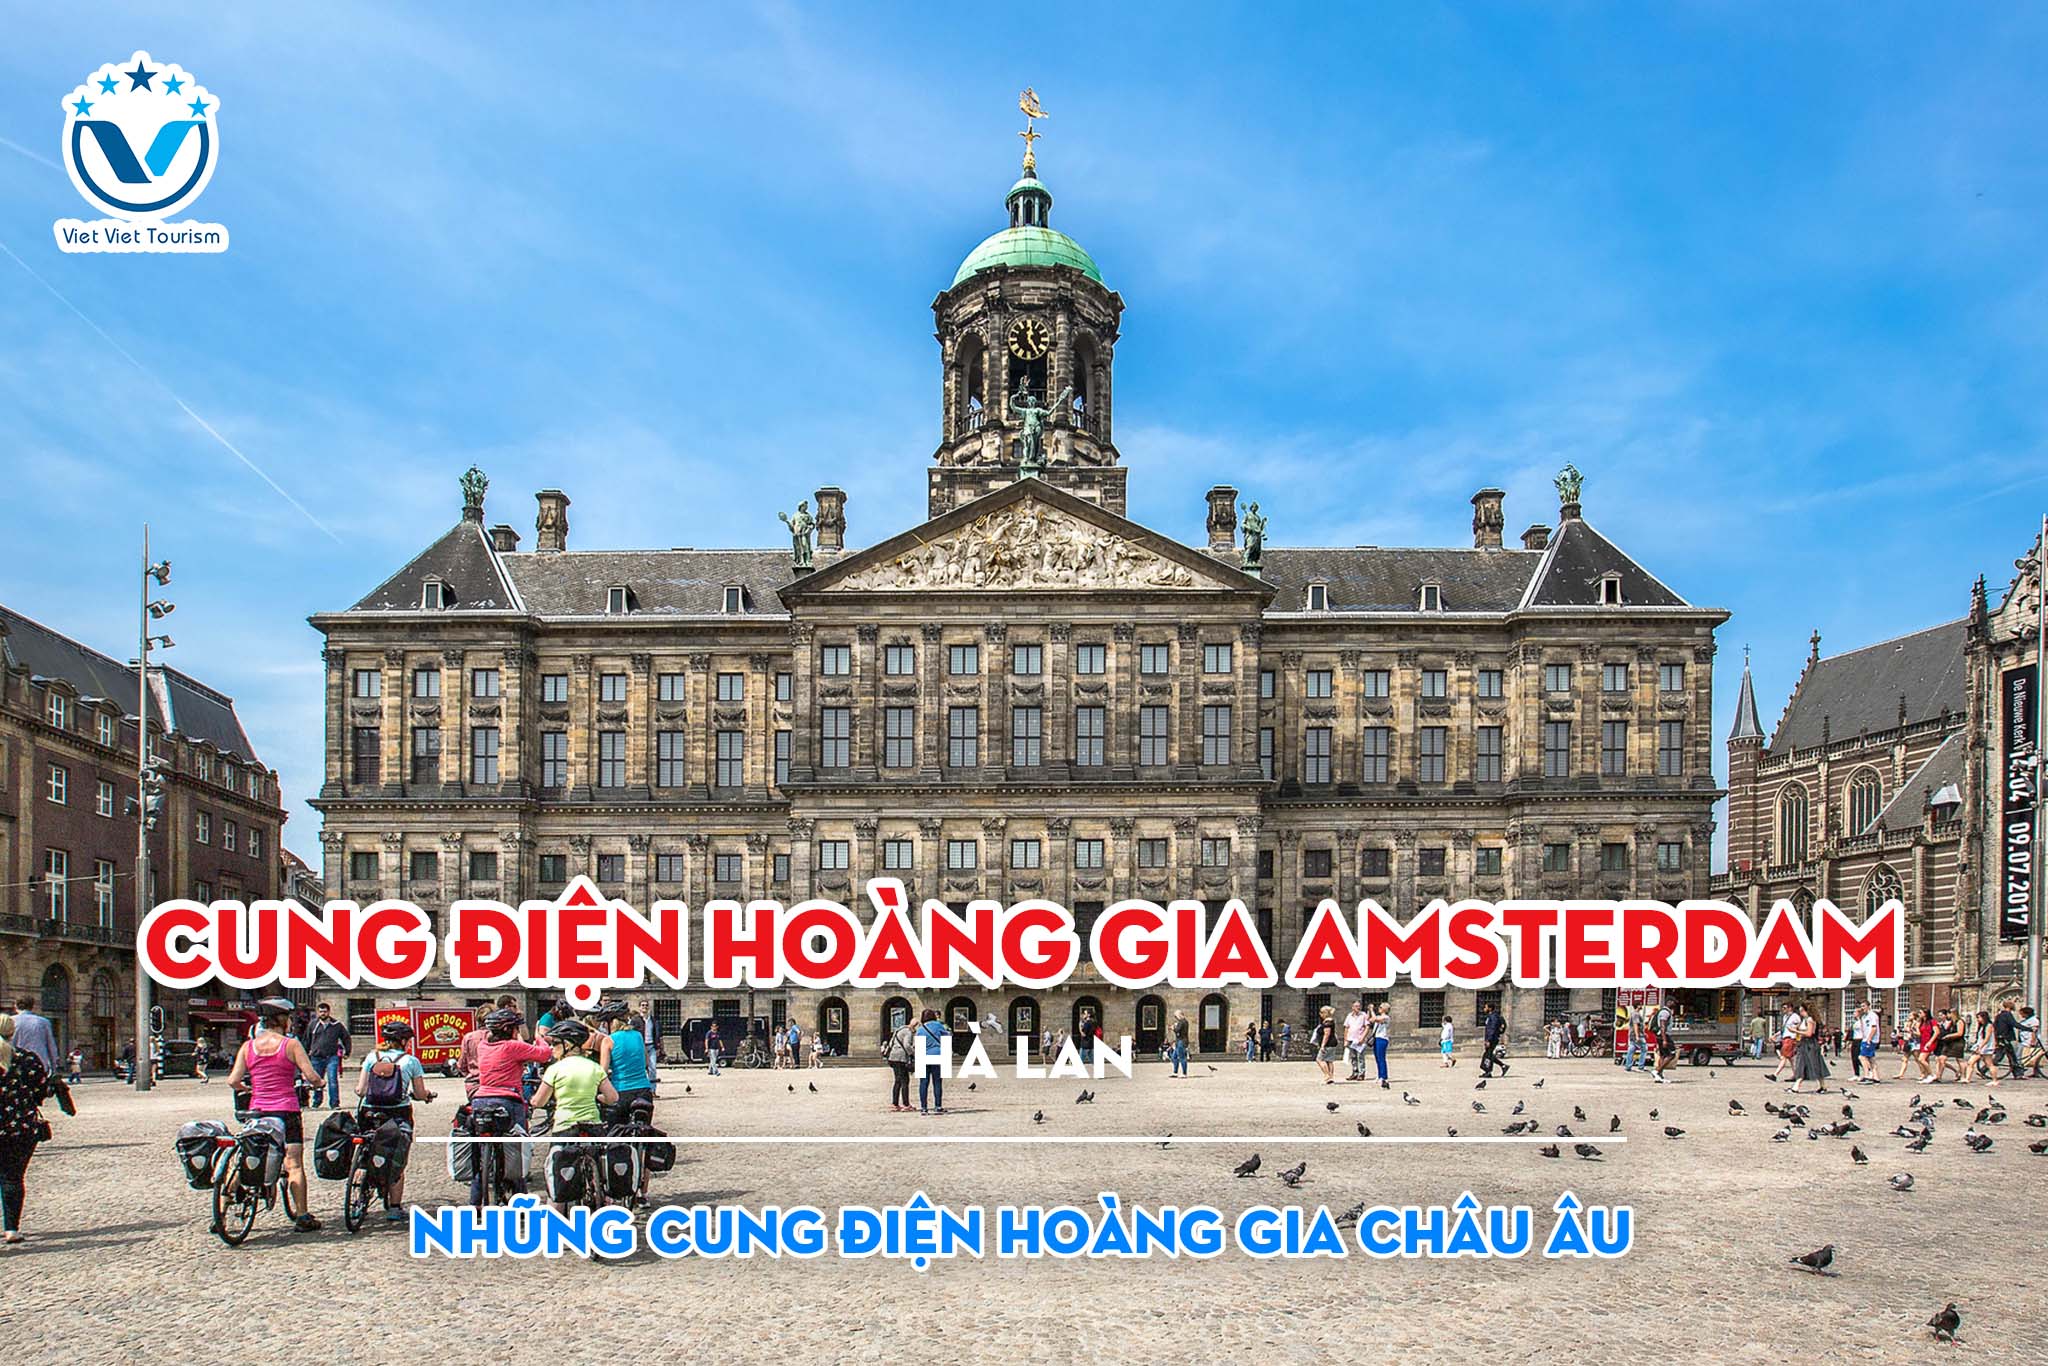 Cung điện Hoàng gia Amsterdam tại tâm điểm của vũ trụ